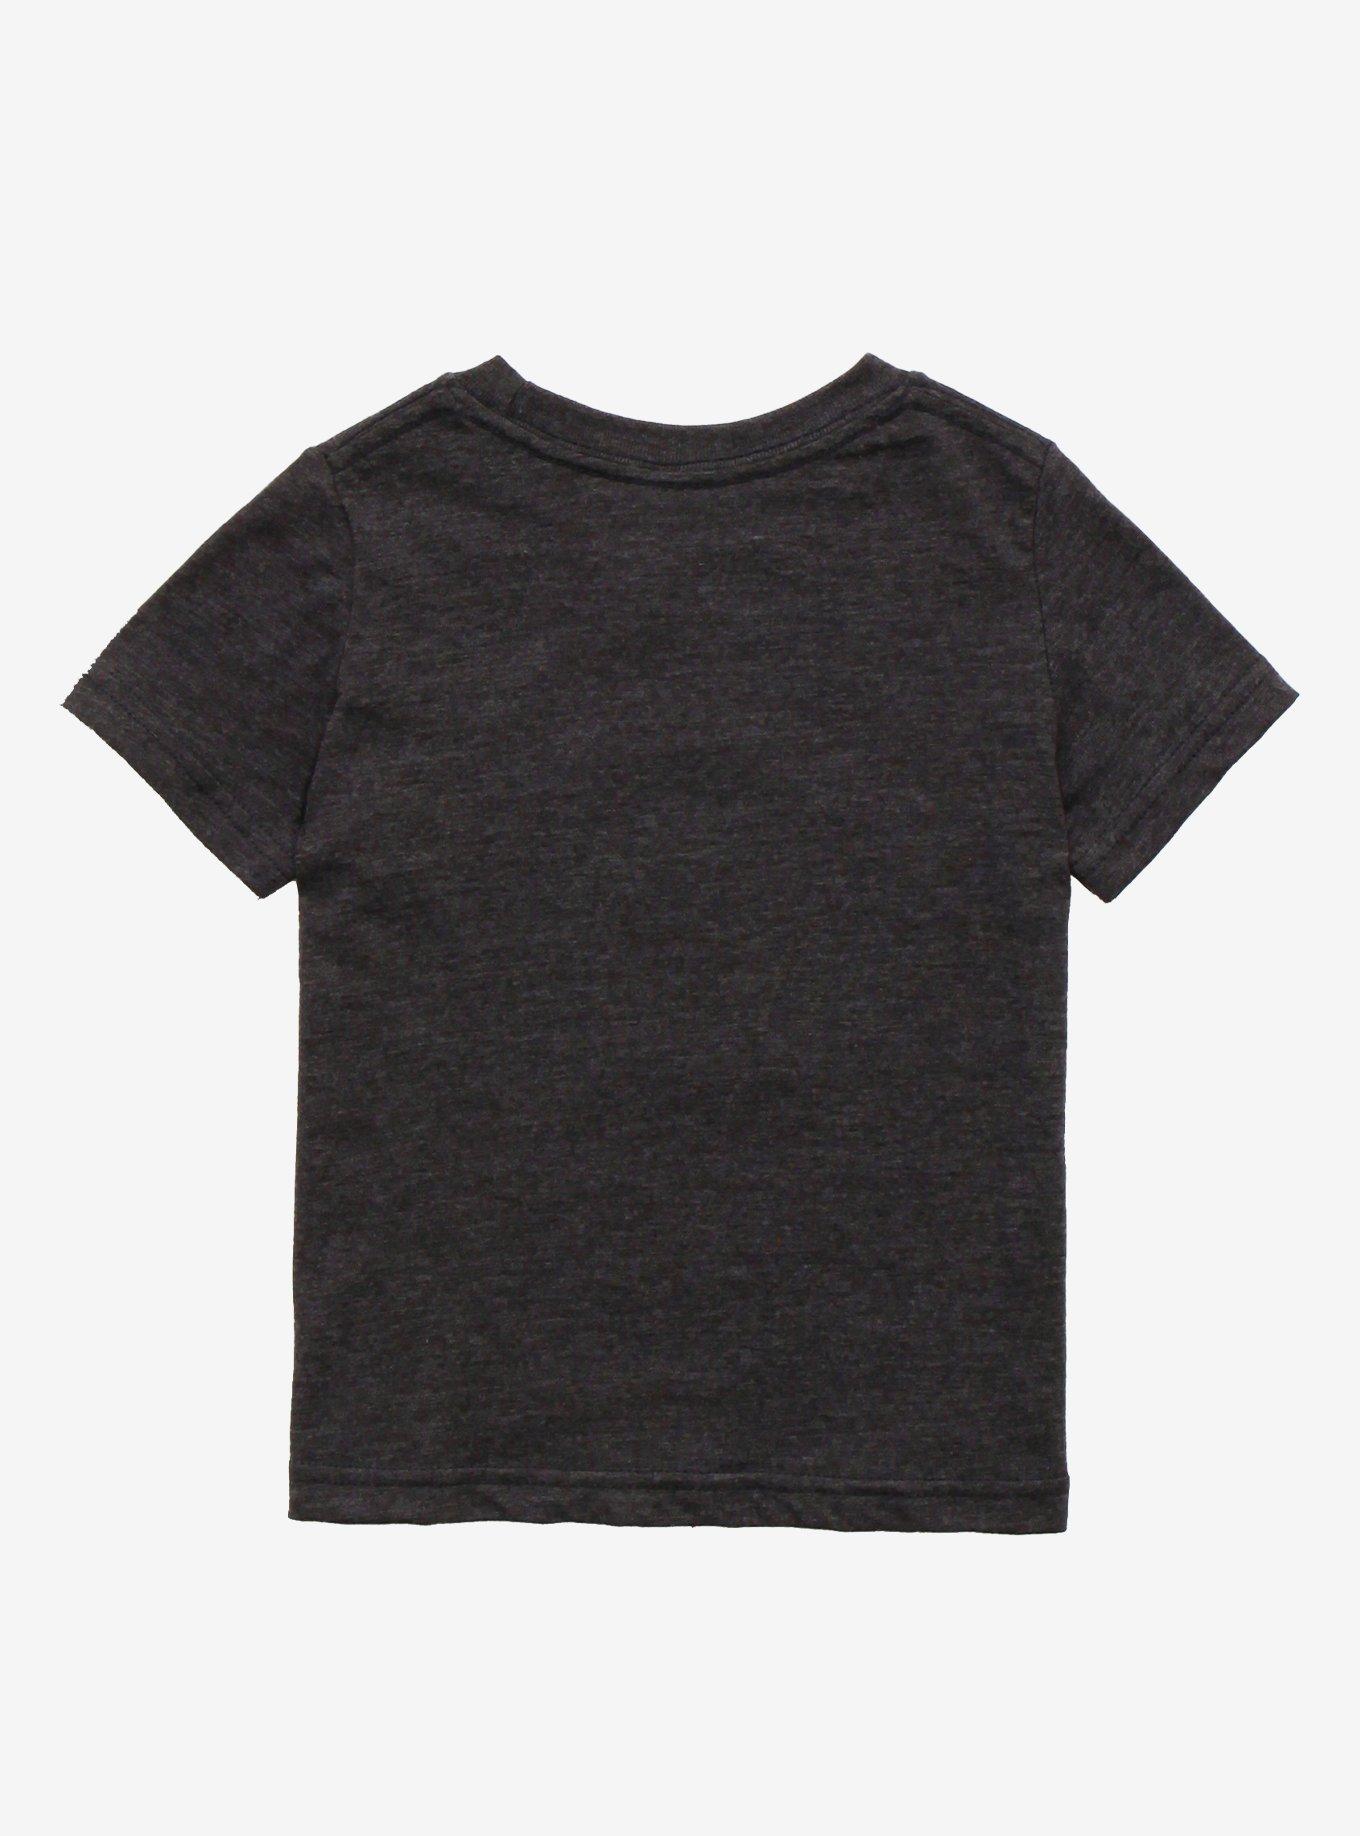 Paramore Hard Times Toddler T-Shirt, GREY, alternate